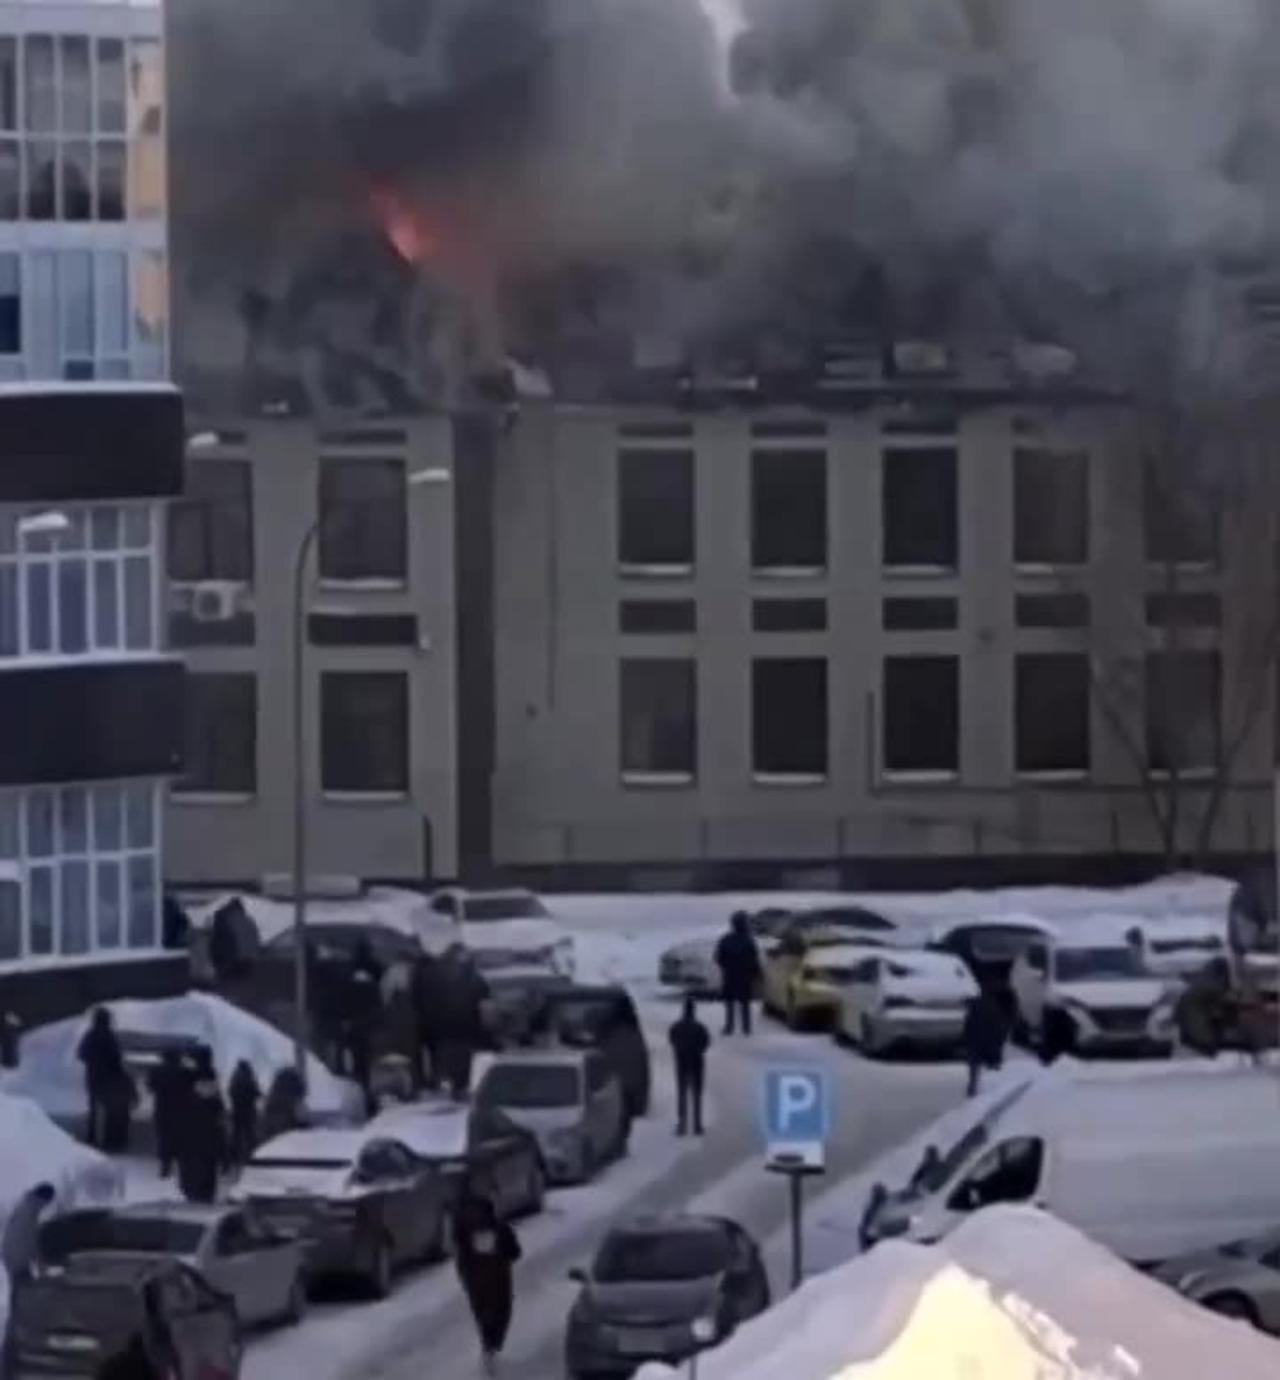 Hotel "Astoria" is on fire in Kazan, Russia